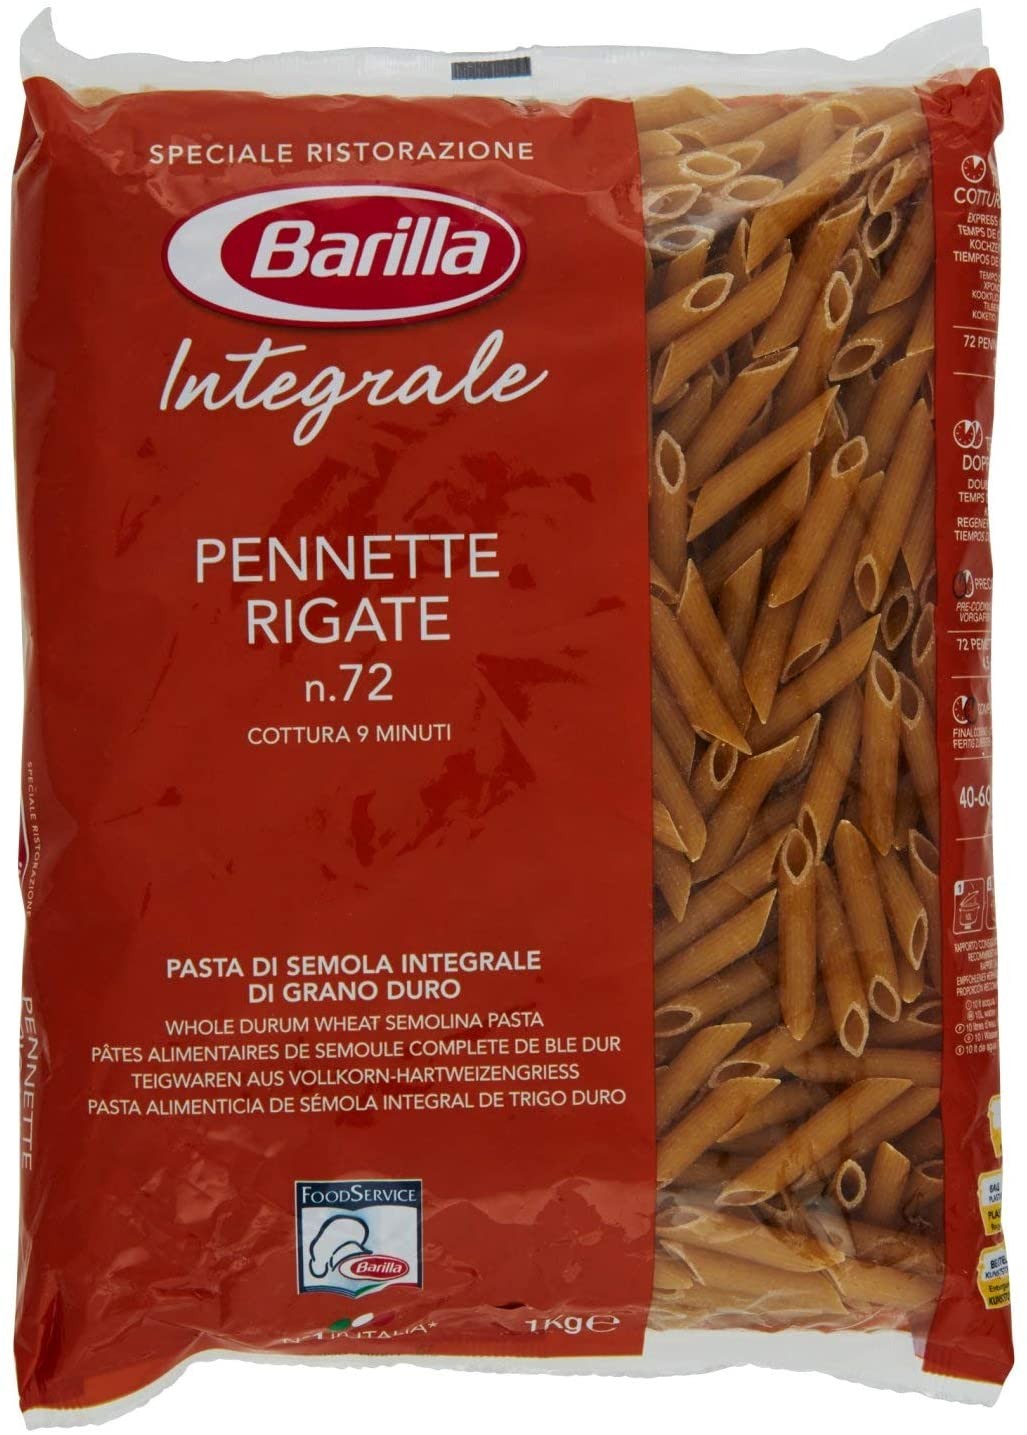 Barilla Pasta Pennette Rigate Integrale, confezione da 3 (3 x 1 kg)